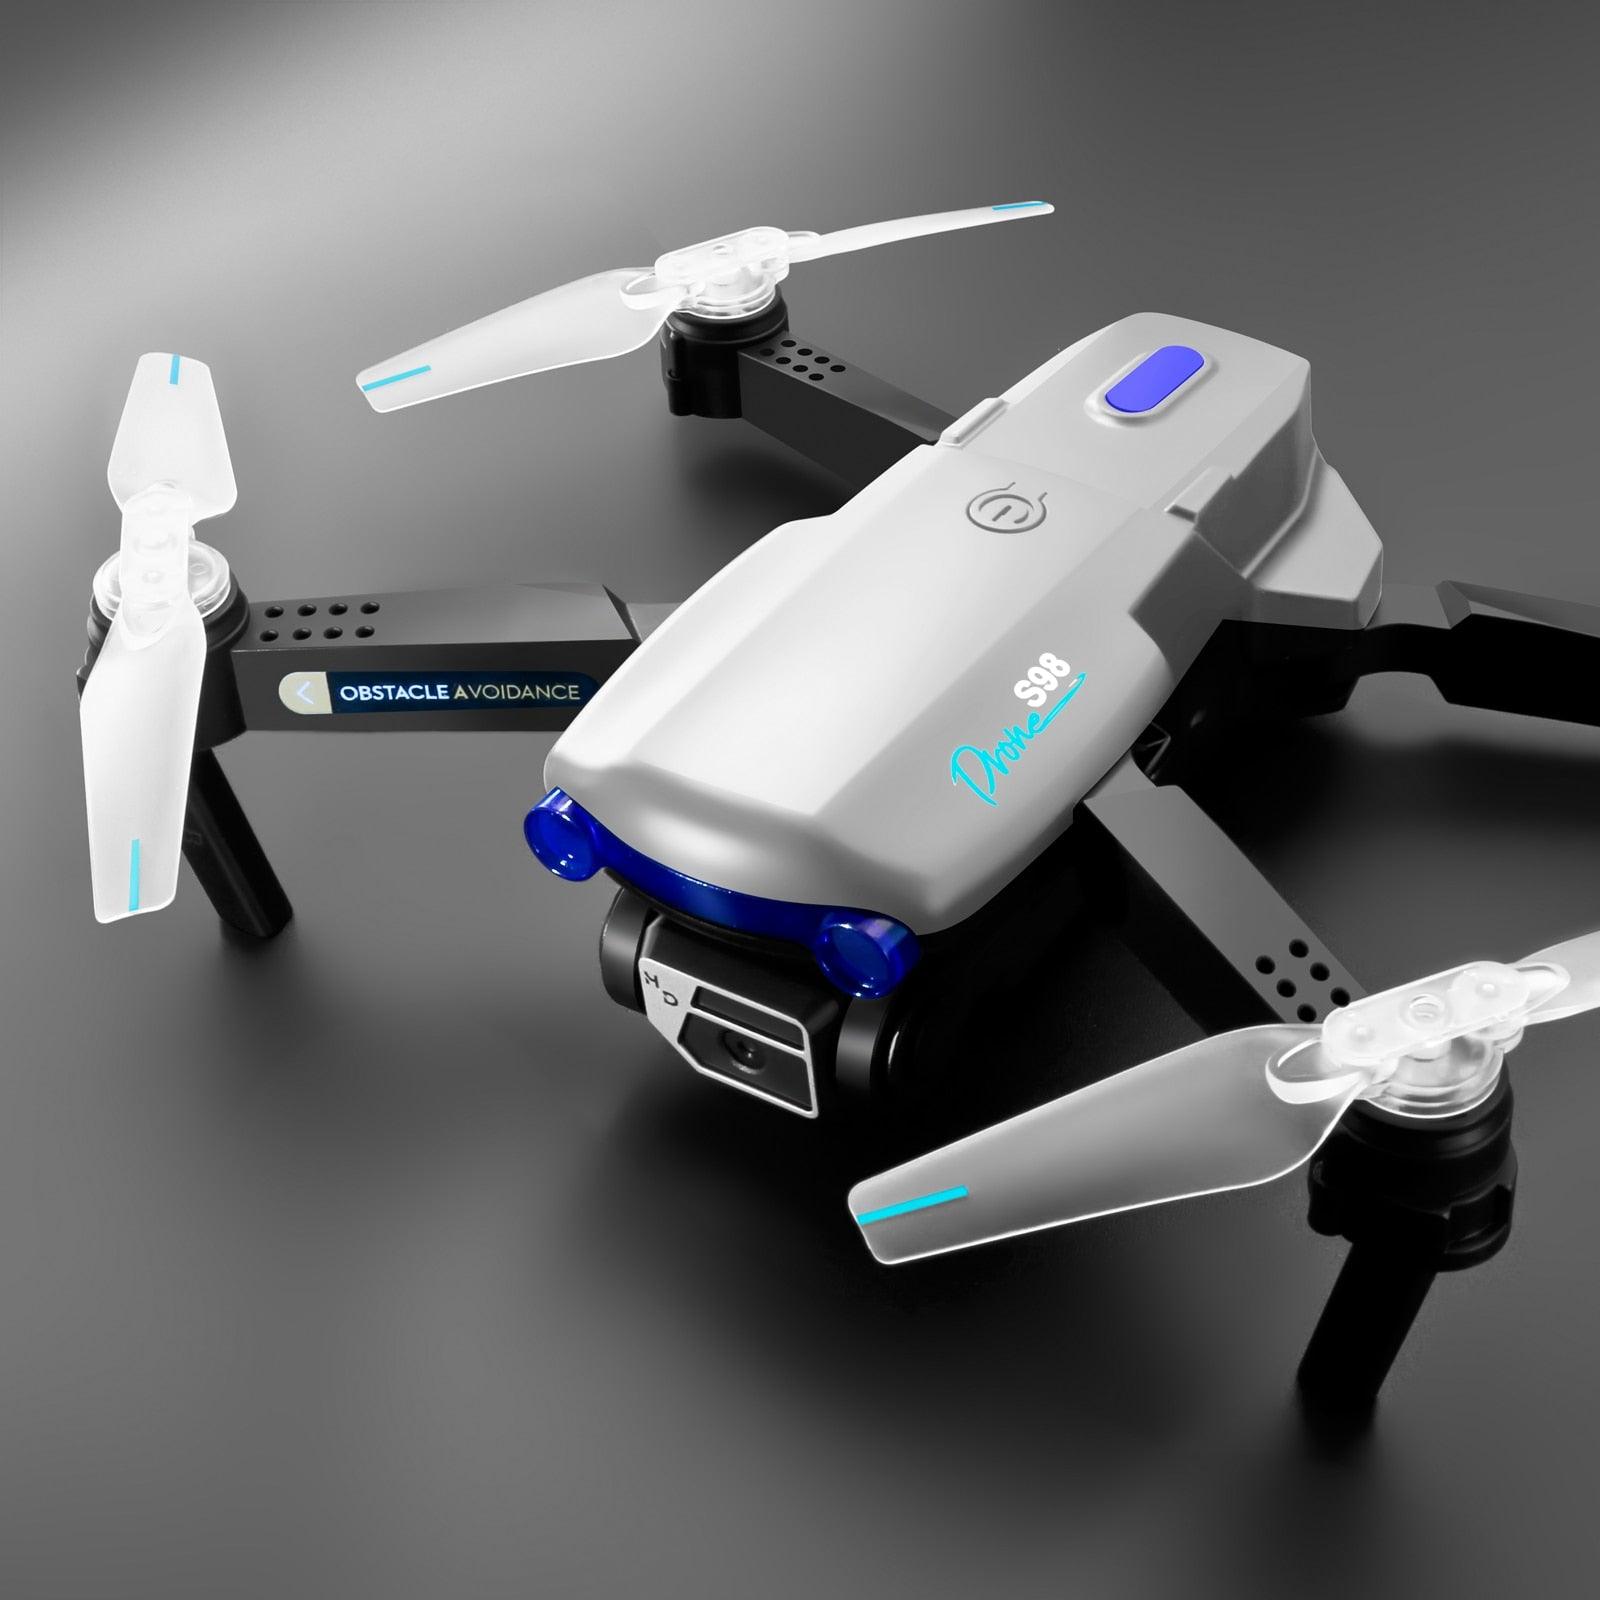 Mini drone professionnel avec caméra 1080p wifi fpv quadcopter hauteur  maintien pliable RC hélicoptère cadeau set gratuit VR lunettes | RC  hélicoptère